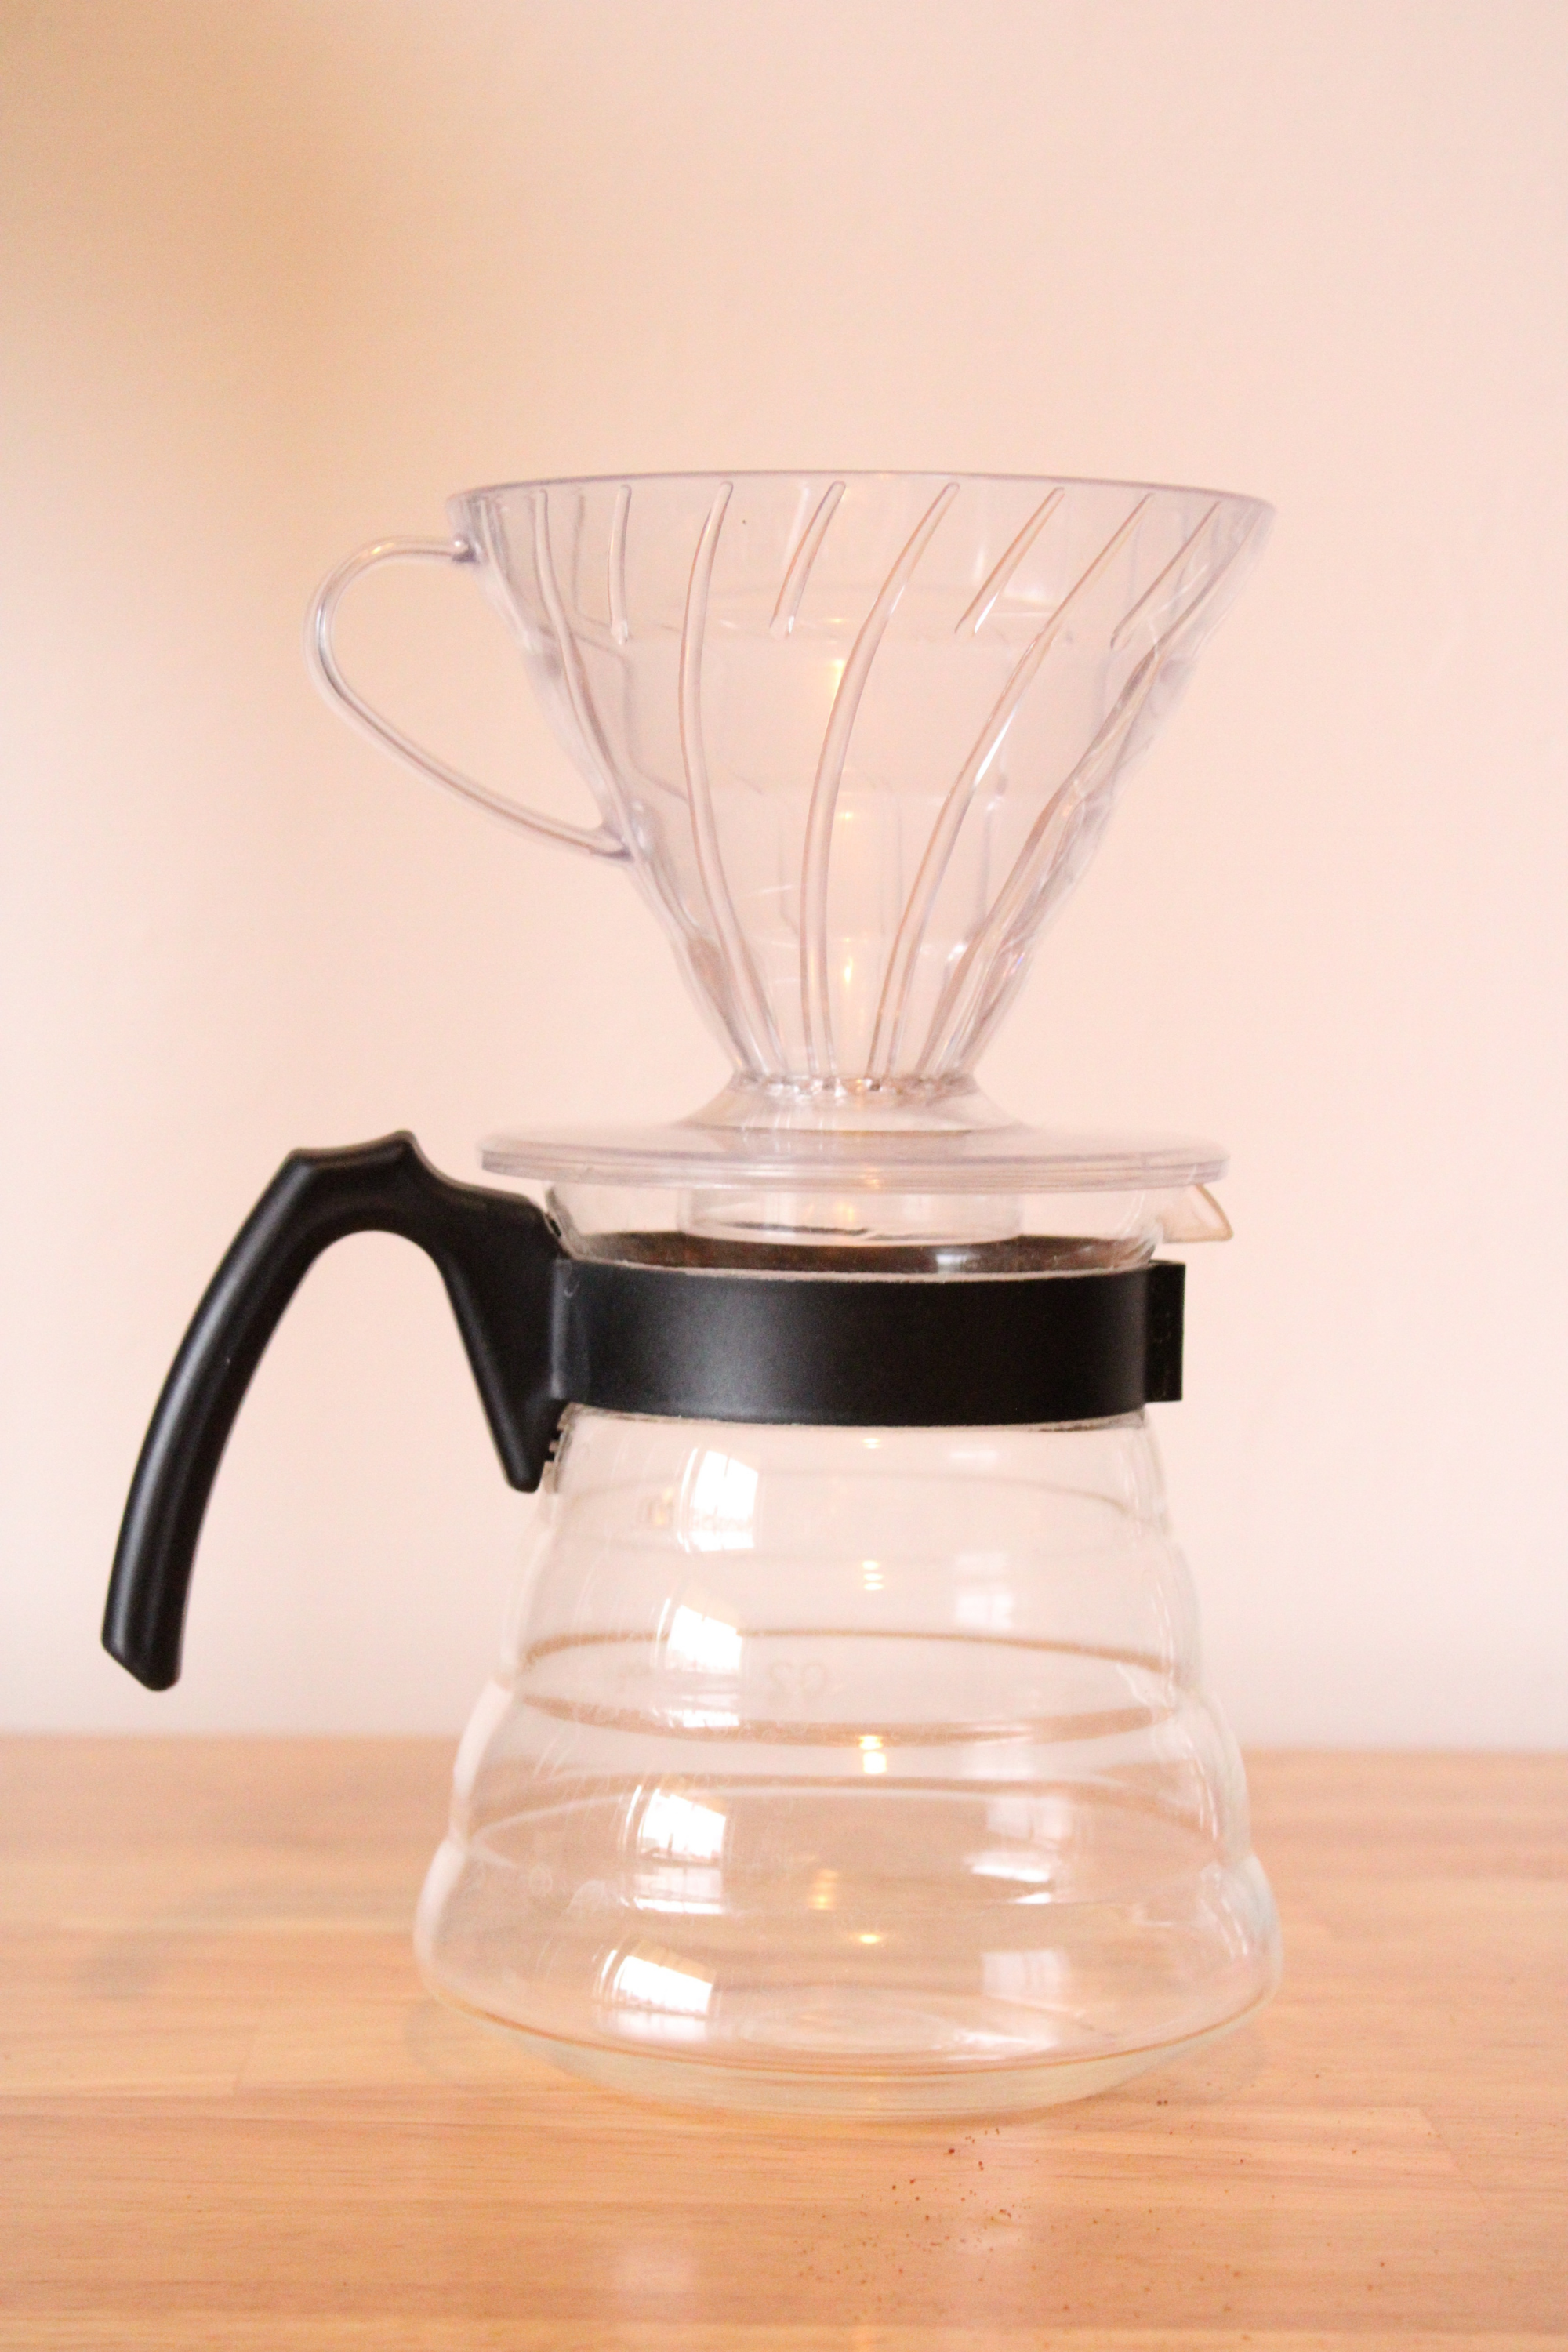 Cómo preparar café en la cafetera V60 – Almaga Coffee Company